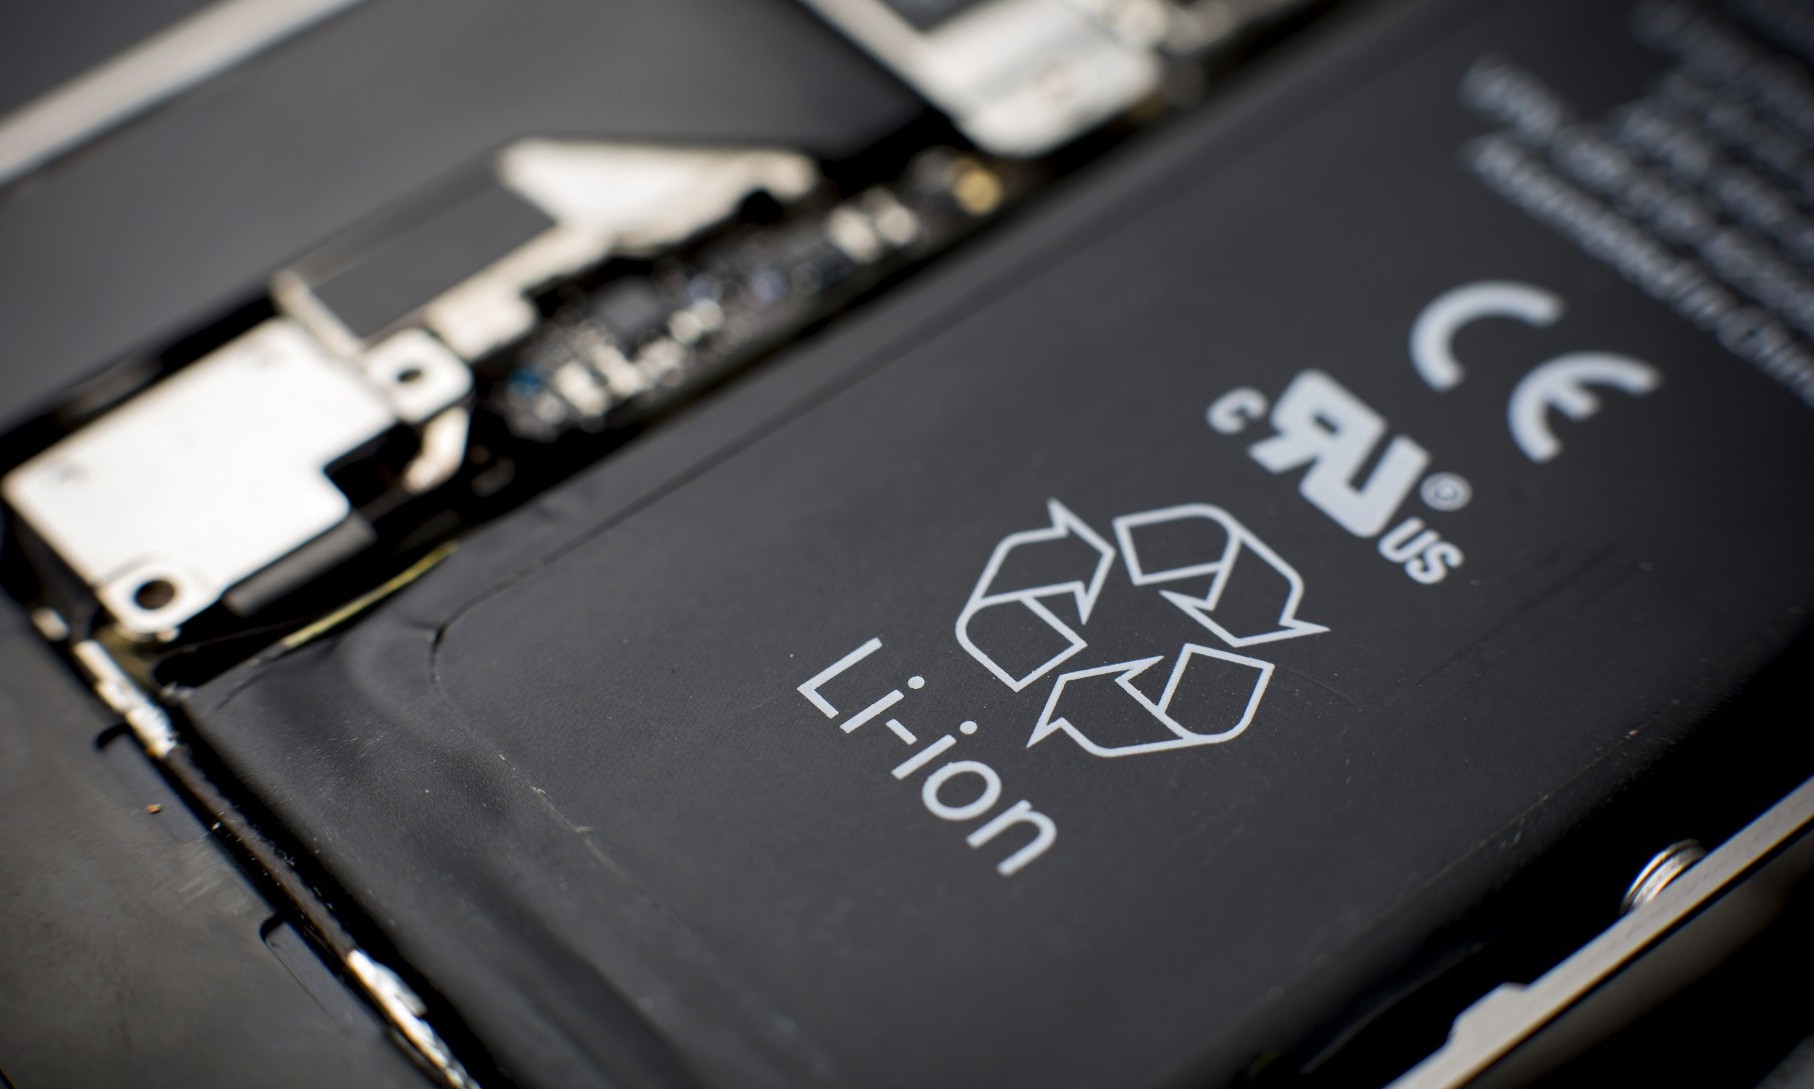 手机电池容量排行榜揭晓:苹果倒数第一,第一名